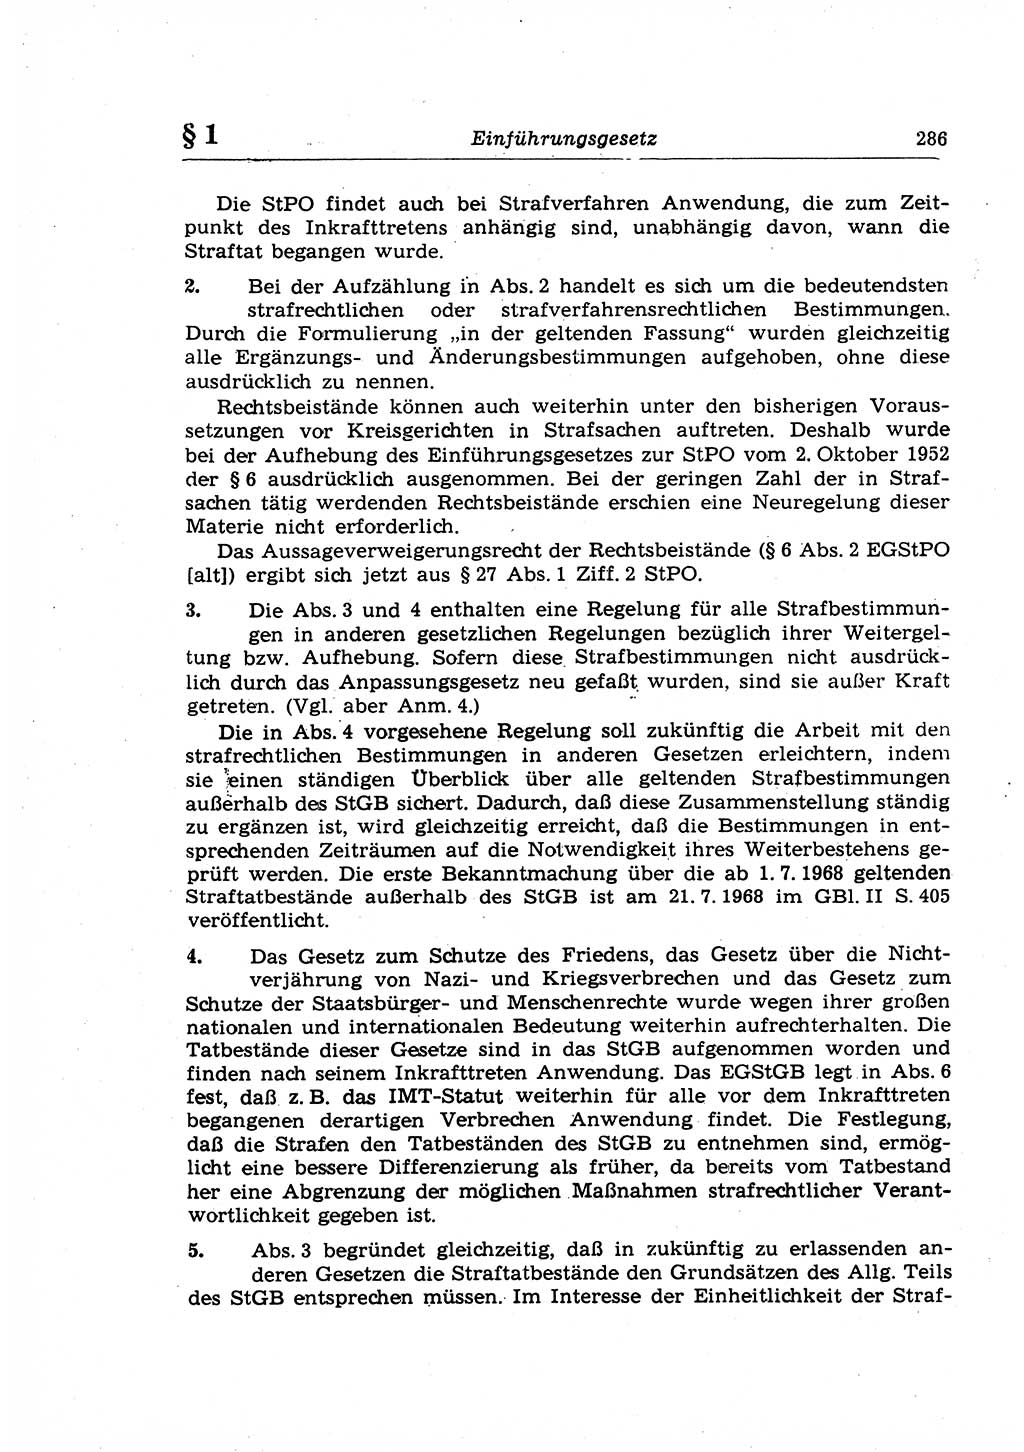 Strafrecht der Deutschen Demokratischen Republik (DDR), Lehrkommentar zum Strafgesetzbuch (StGB), Allgemeiner Teil 1969, Seite 286 (Strafr. DDR Lehrkomm. StGB AT 1969, S. 286)